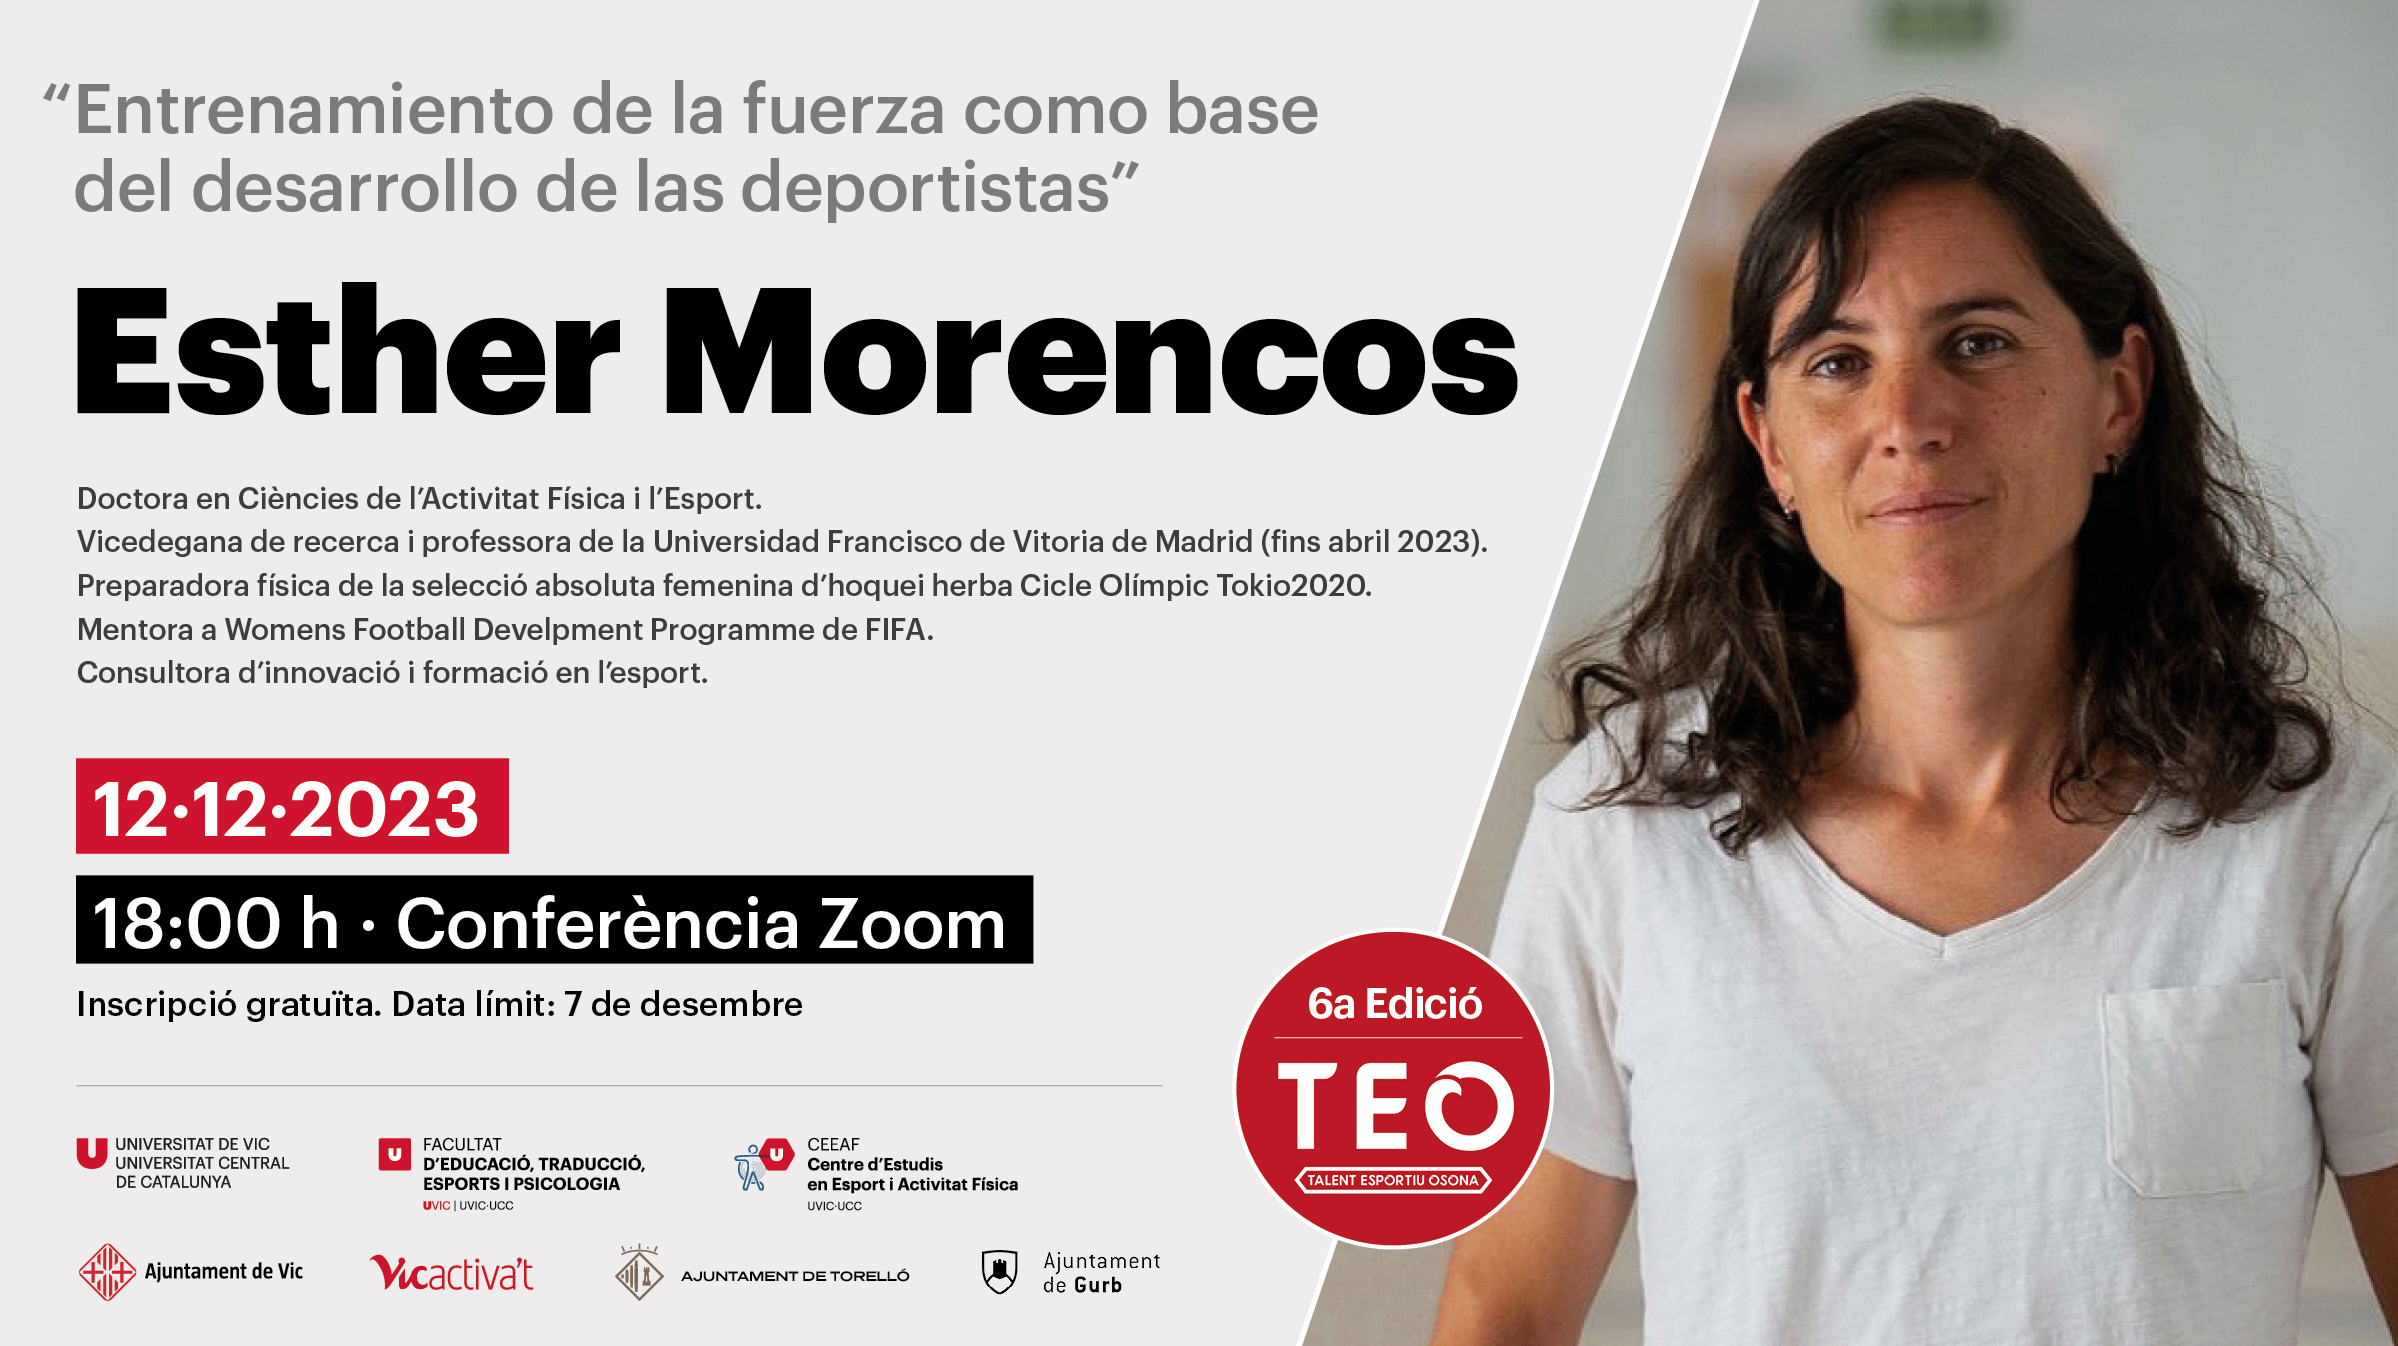 Esther Morencos TEO